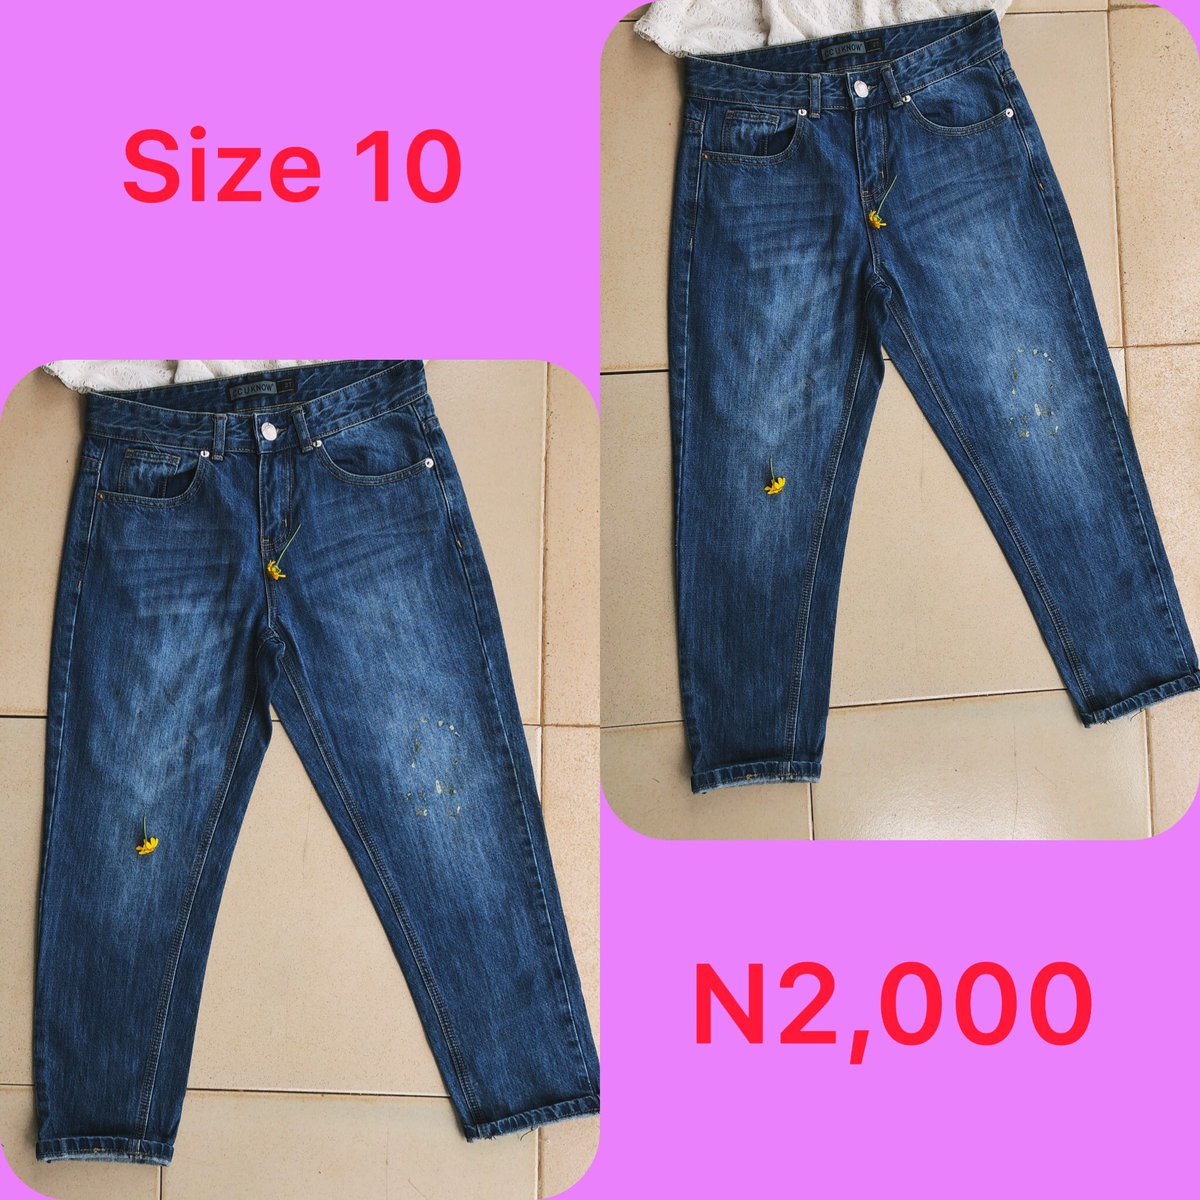 Slide 1: bf jeans      Size 10, N2,000Slide 2: black skinny jeans       Size 18/20, Price: N2,000Slide 3: bf jeans       Size 12, Price: N2,000Slide 4: bf jeans       Size 12, Price N2,500